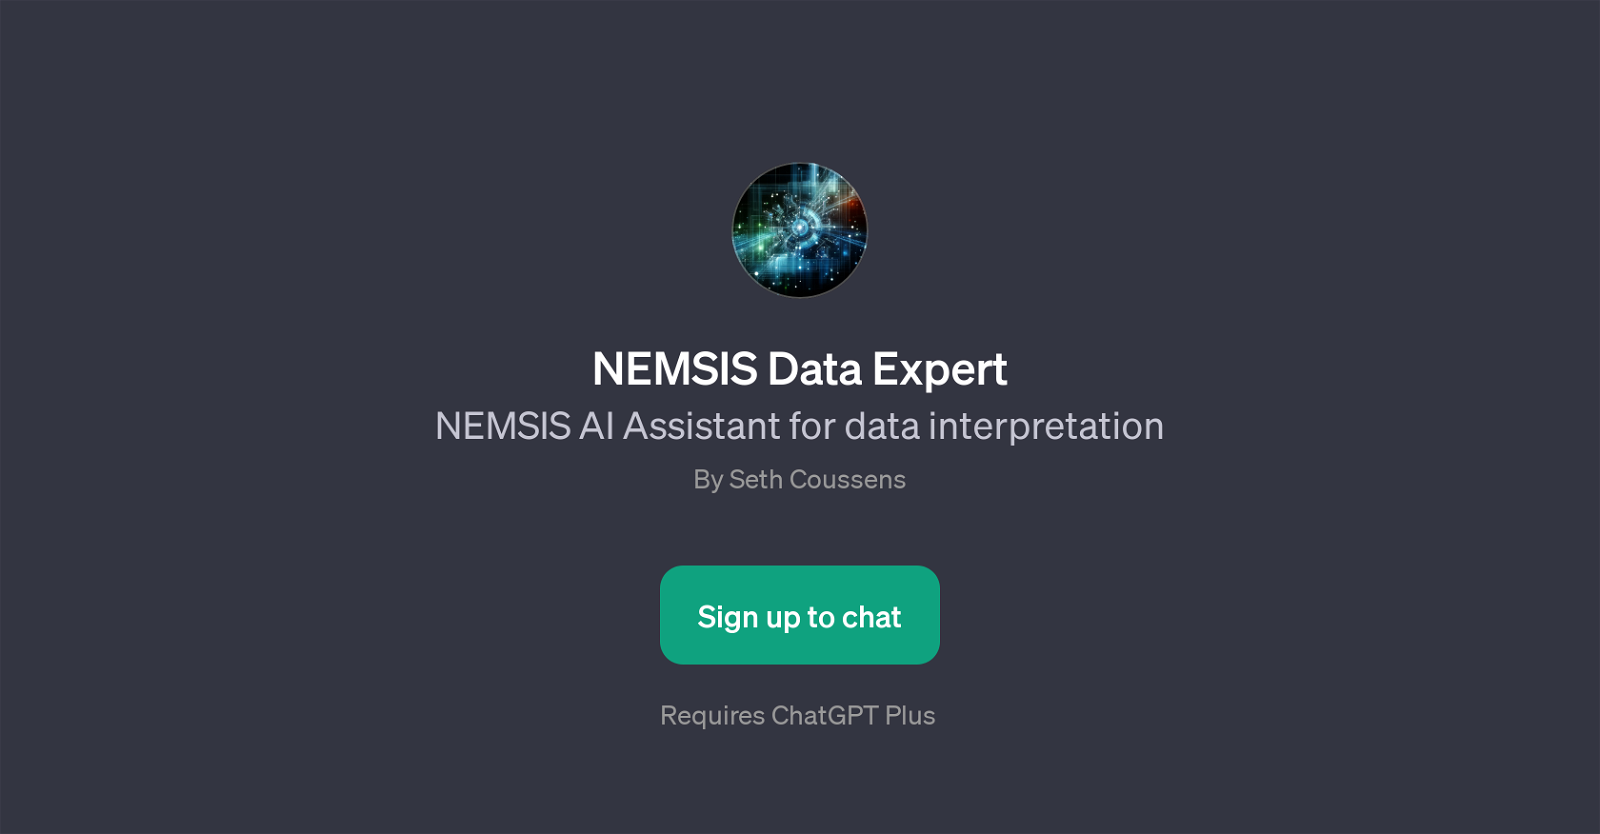 NEMSIS Data Expert website